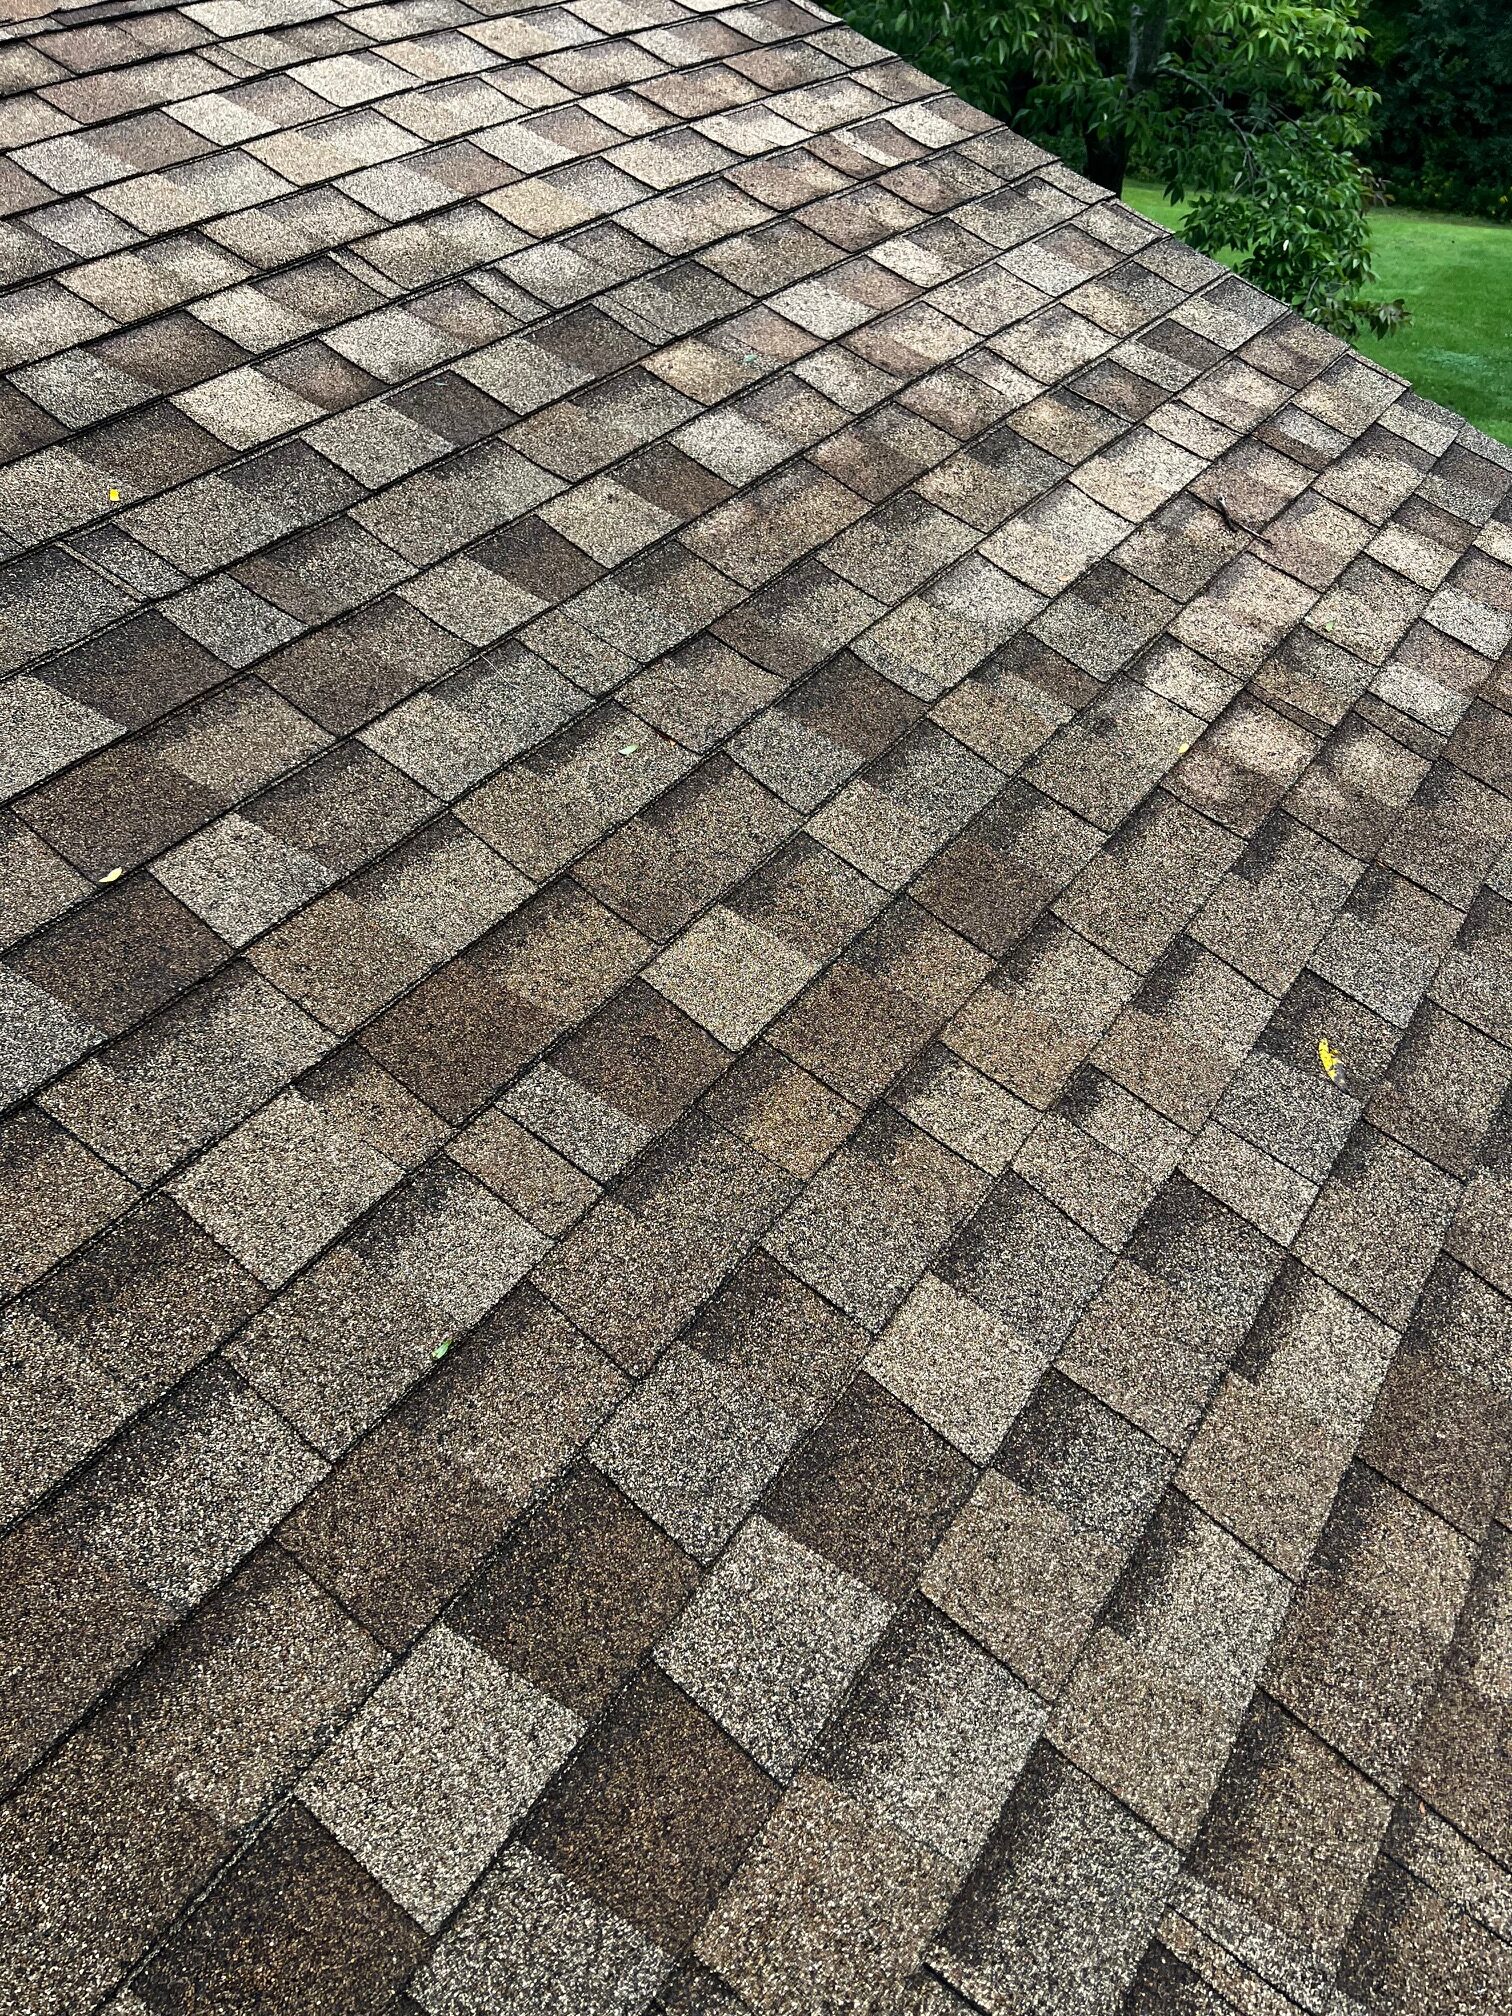 Milwaukee roof repairs